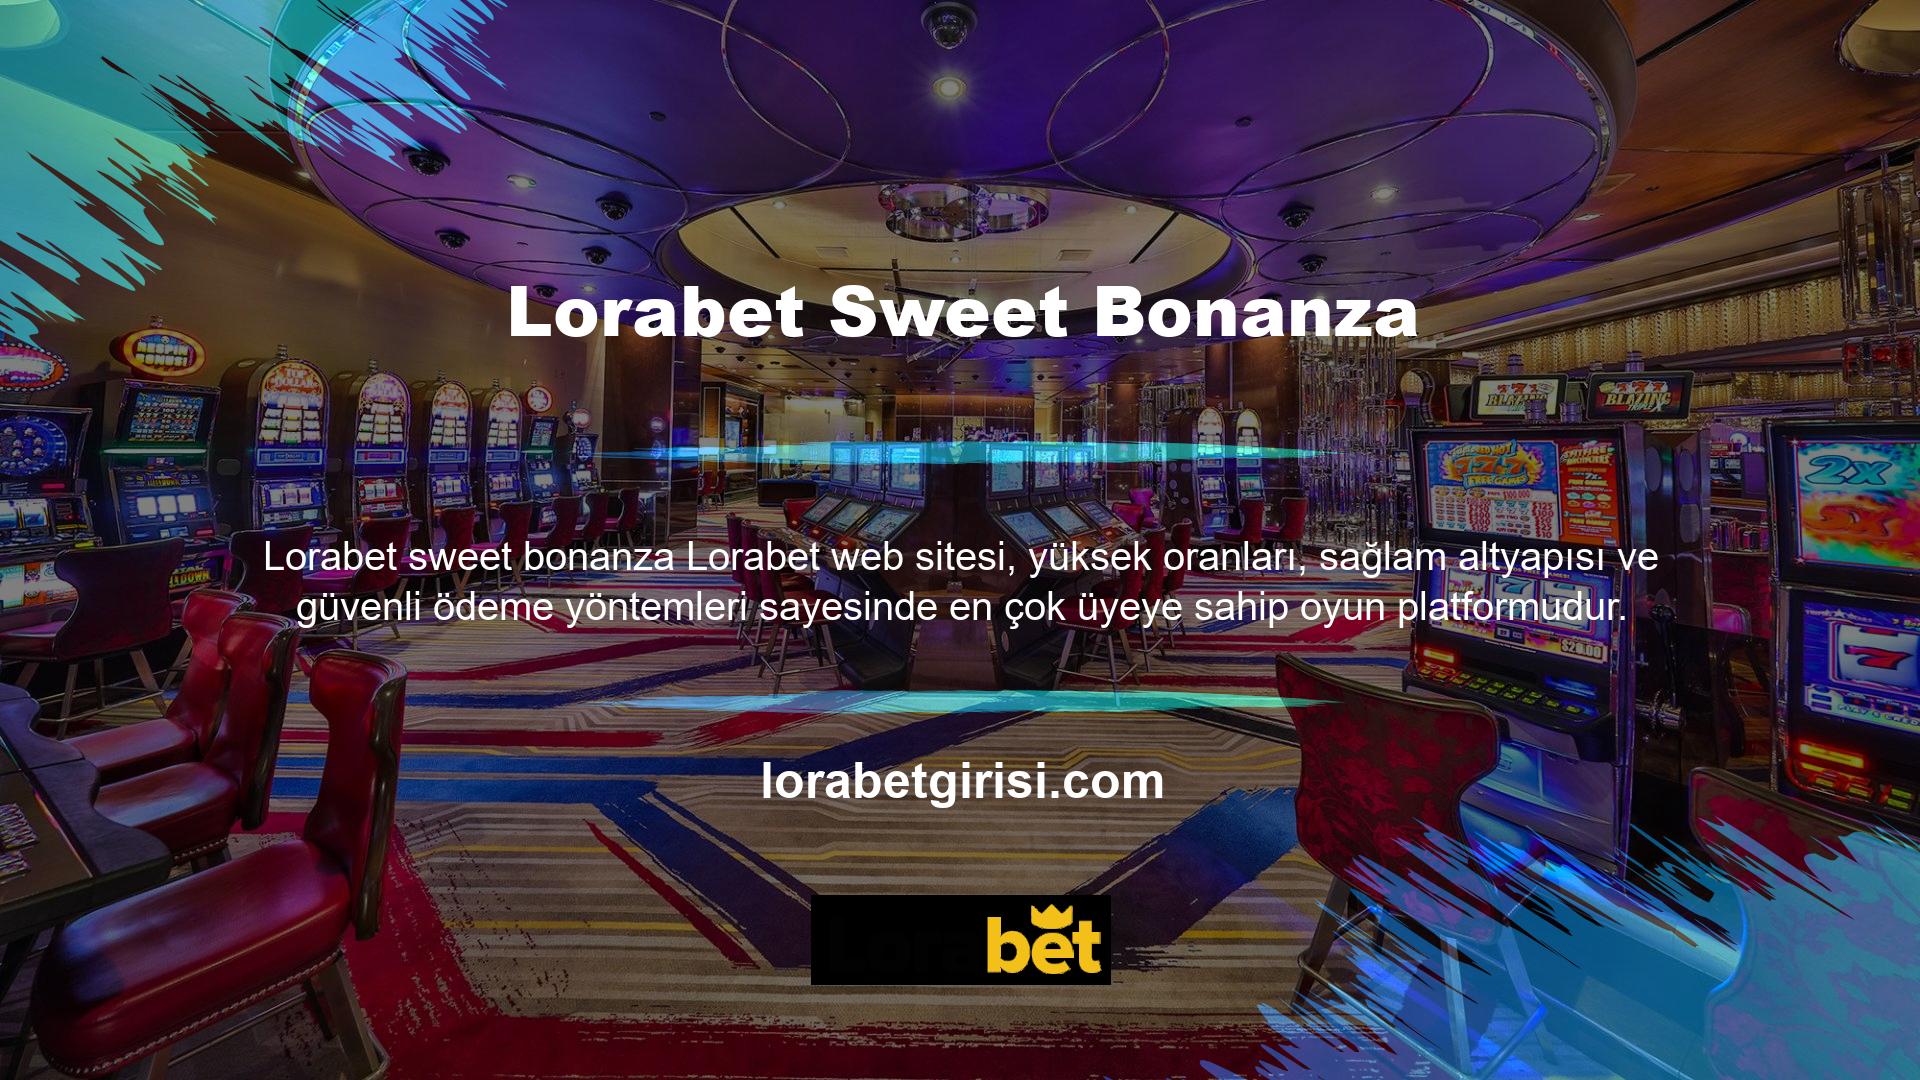 Lorabet web sitesi oyun dünyasında kalitesini kanıtlamış ve ev sahipliği yaptığı turnuvalar oldukça popüler